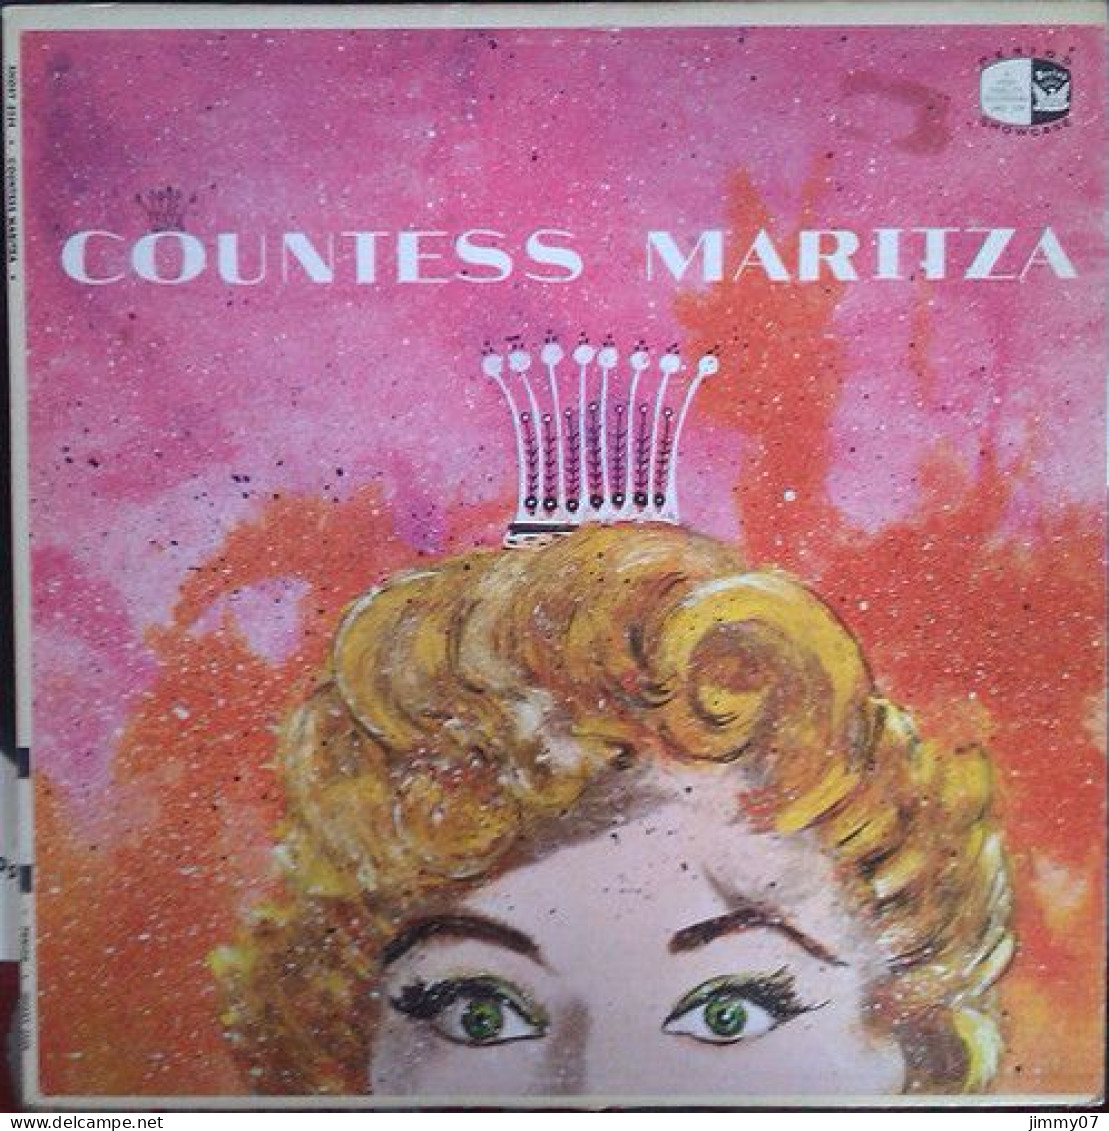 Emmerich Kalman - "Countess Maritza" (LP) - Classique